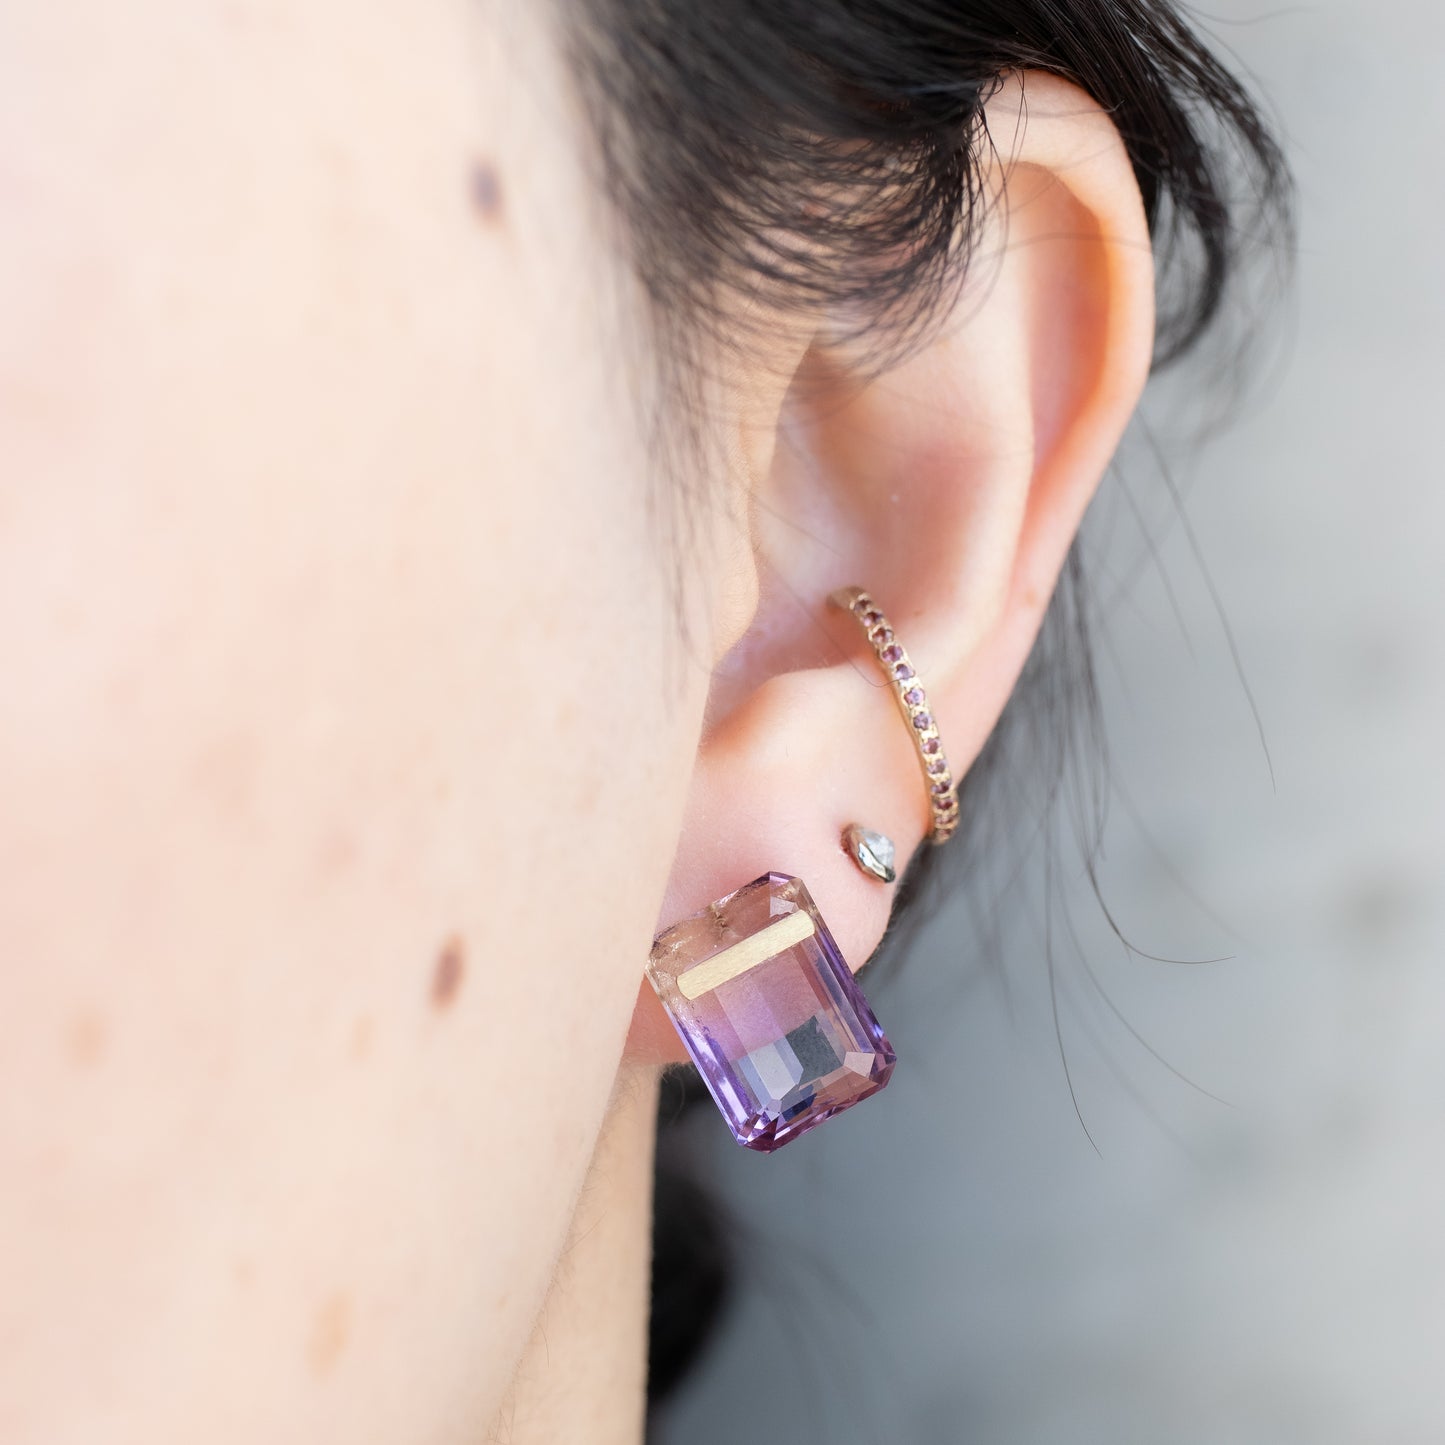 条石穿孔耳环 - 紫黄晶 -